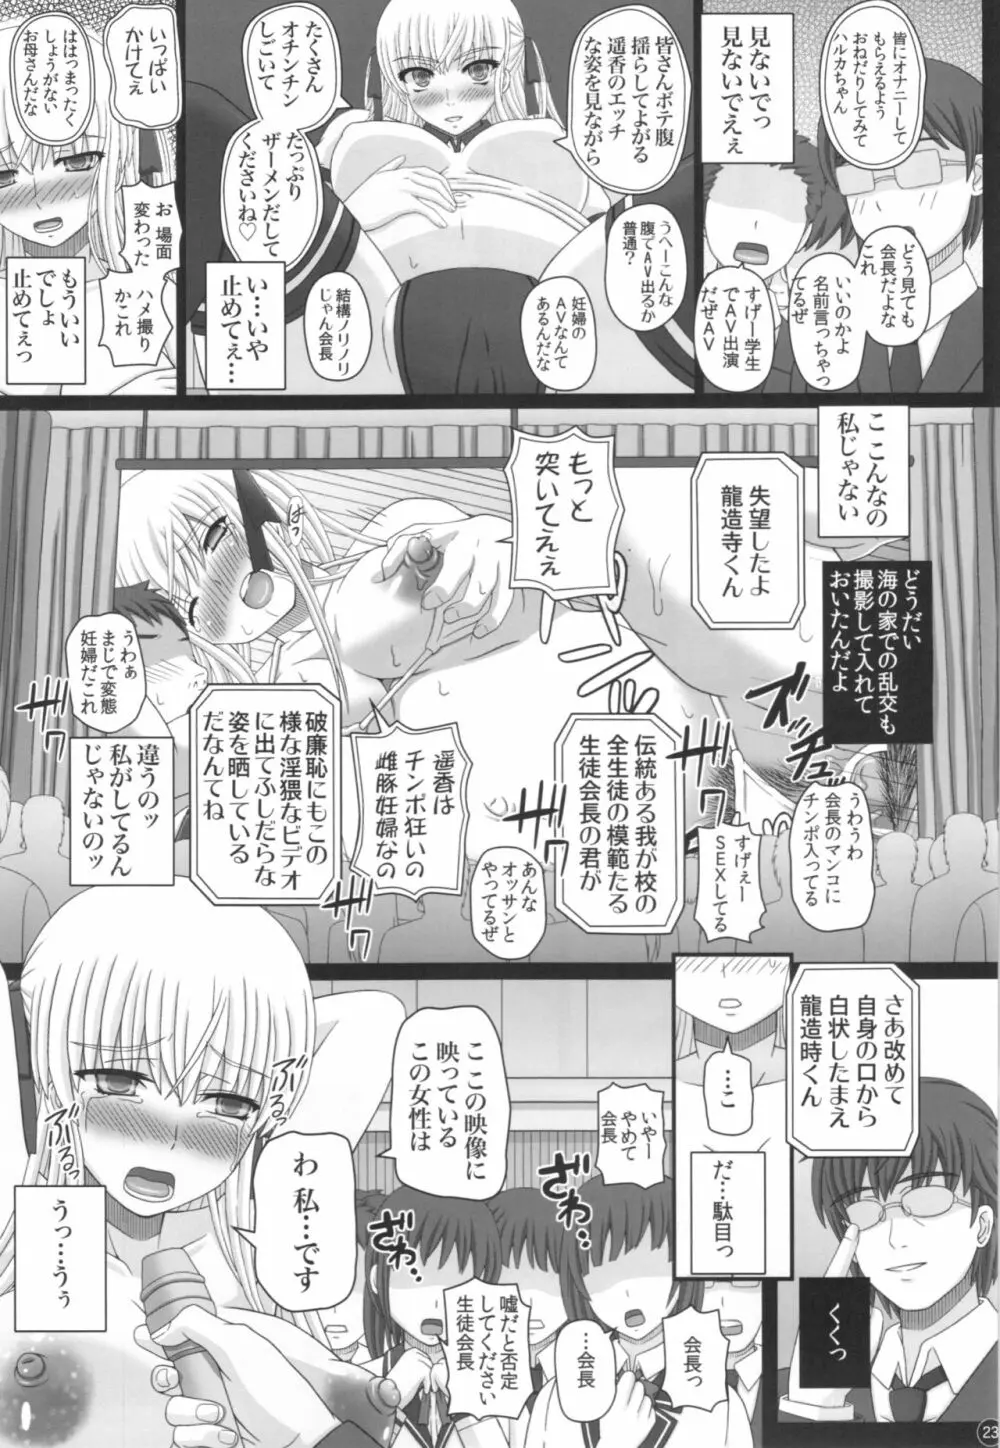 Katashibu 40-shuu 23ページ